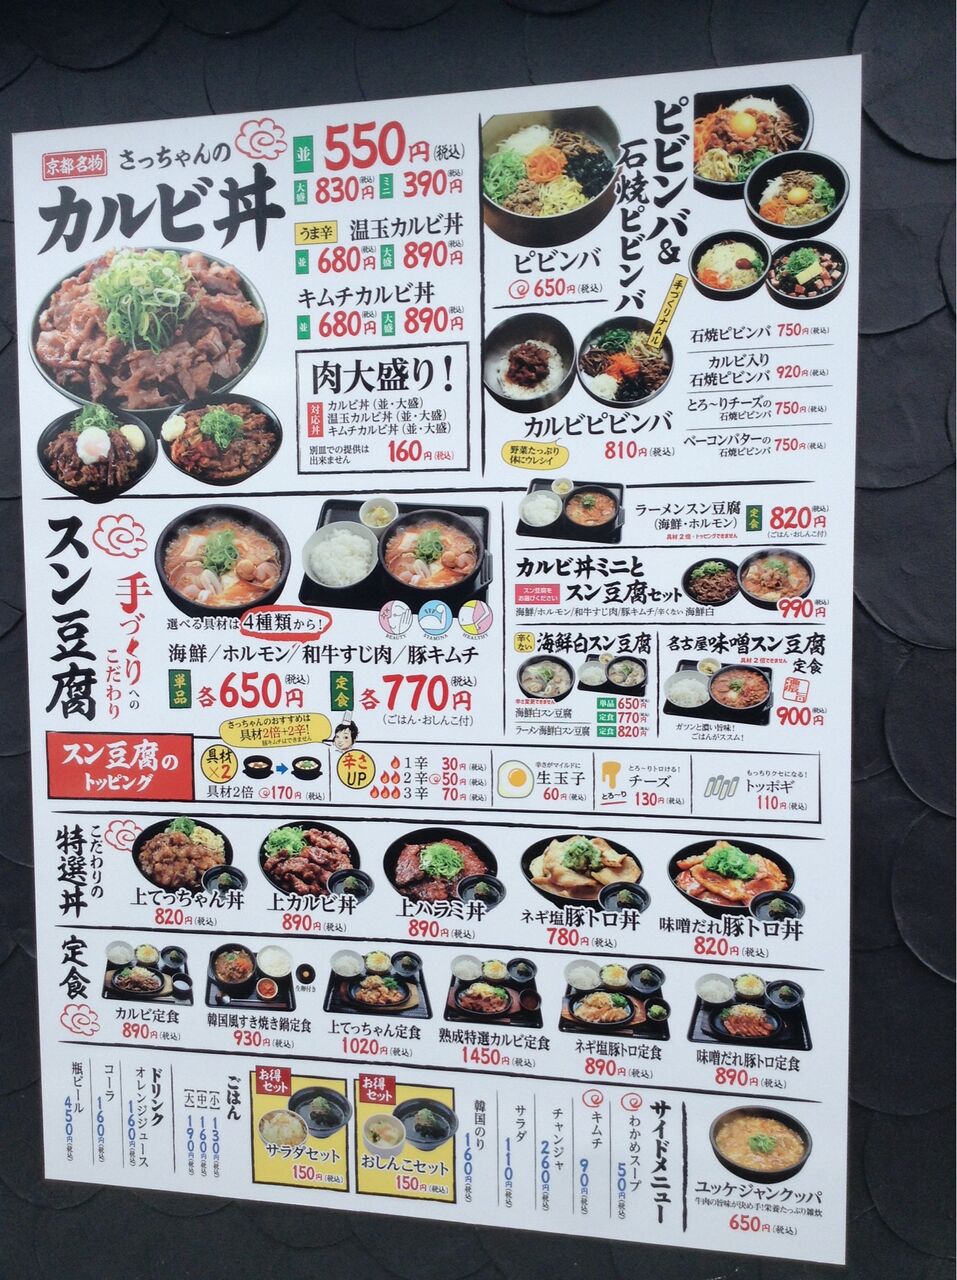 岐阜県 美濃加茂 ボリュームアリアリのカルビ丼とあったかスン豆腐 まんぷく調査団